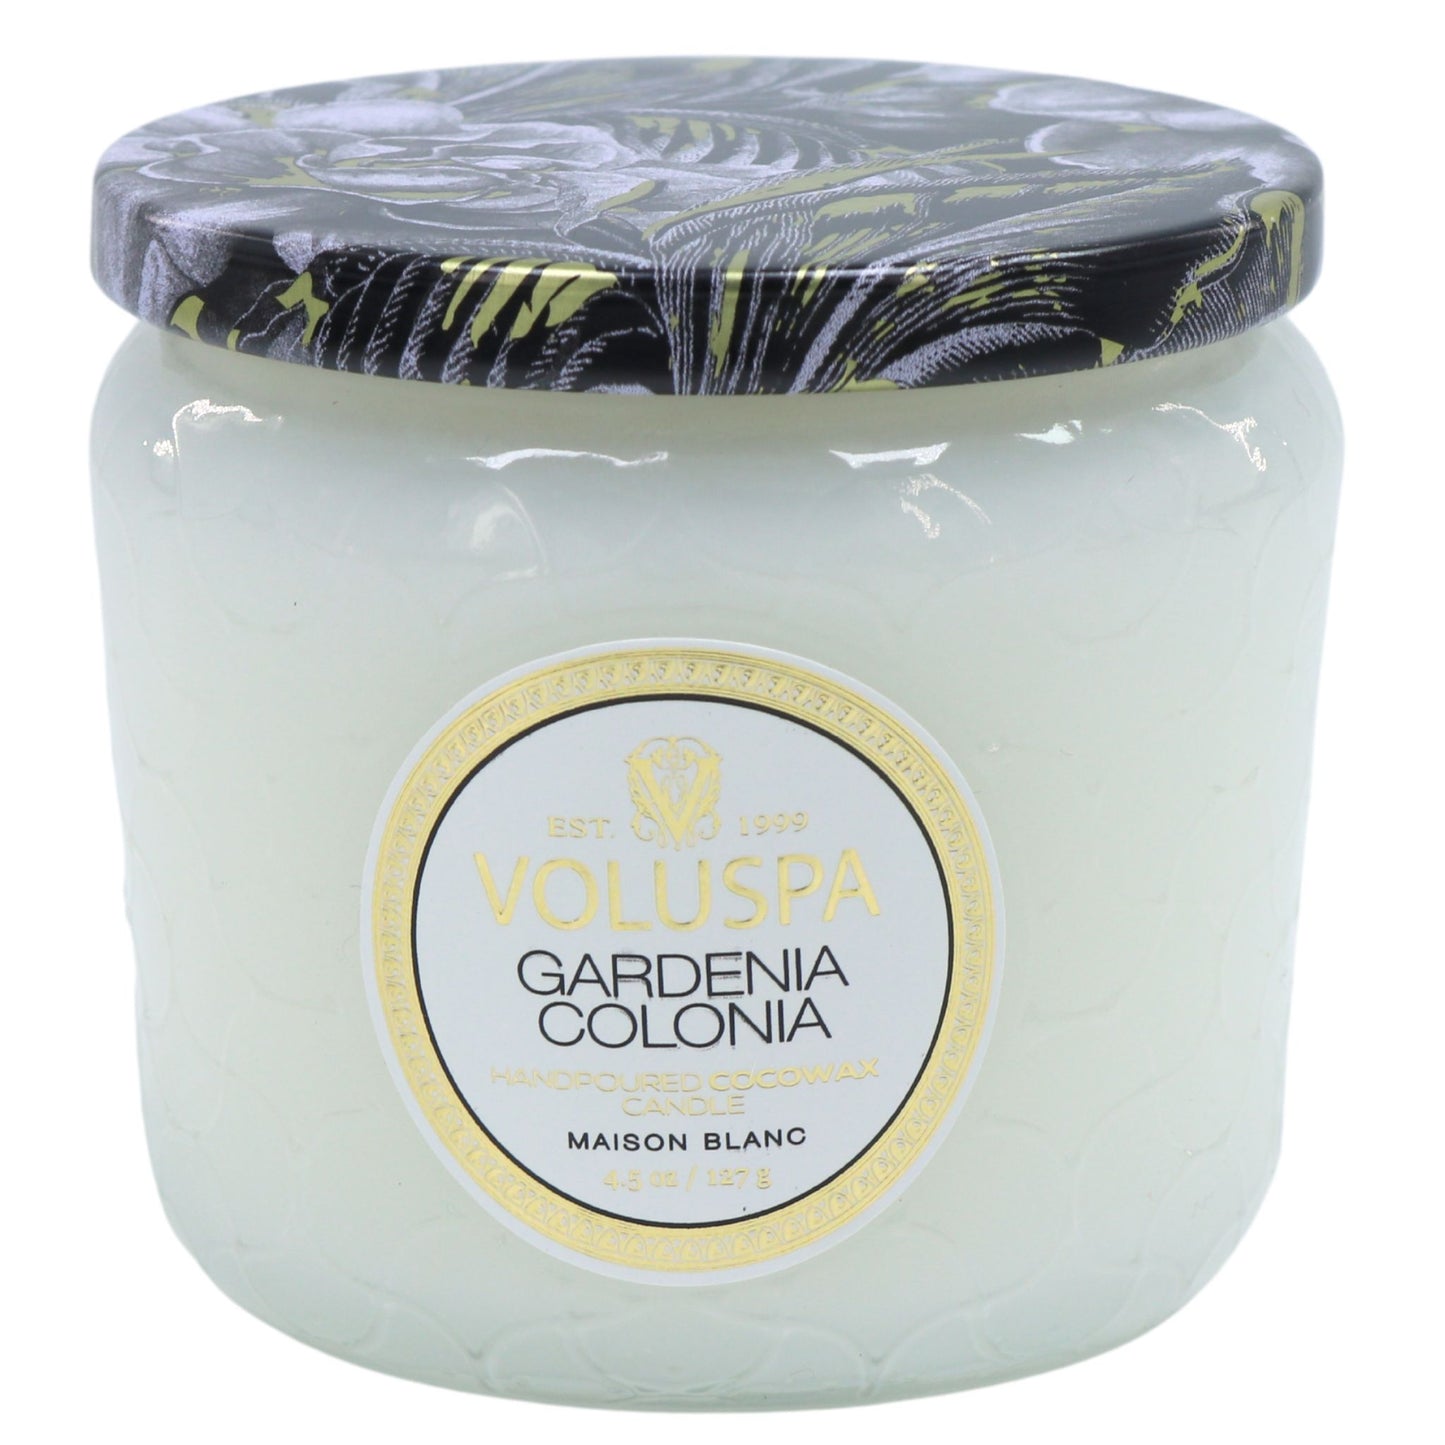 Voluspa Gardenia Colonia Candle